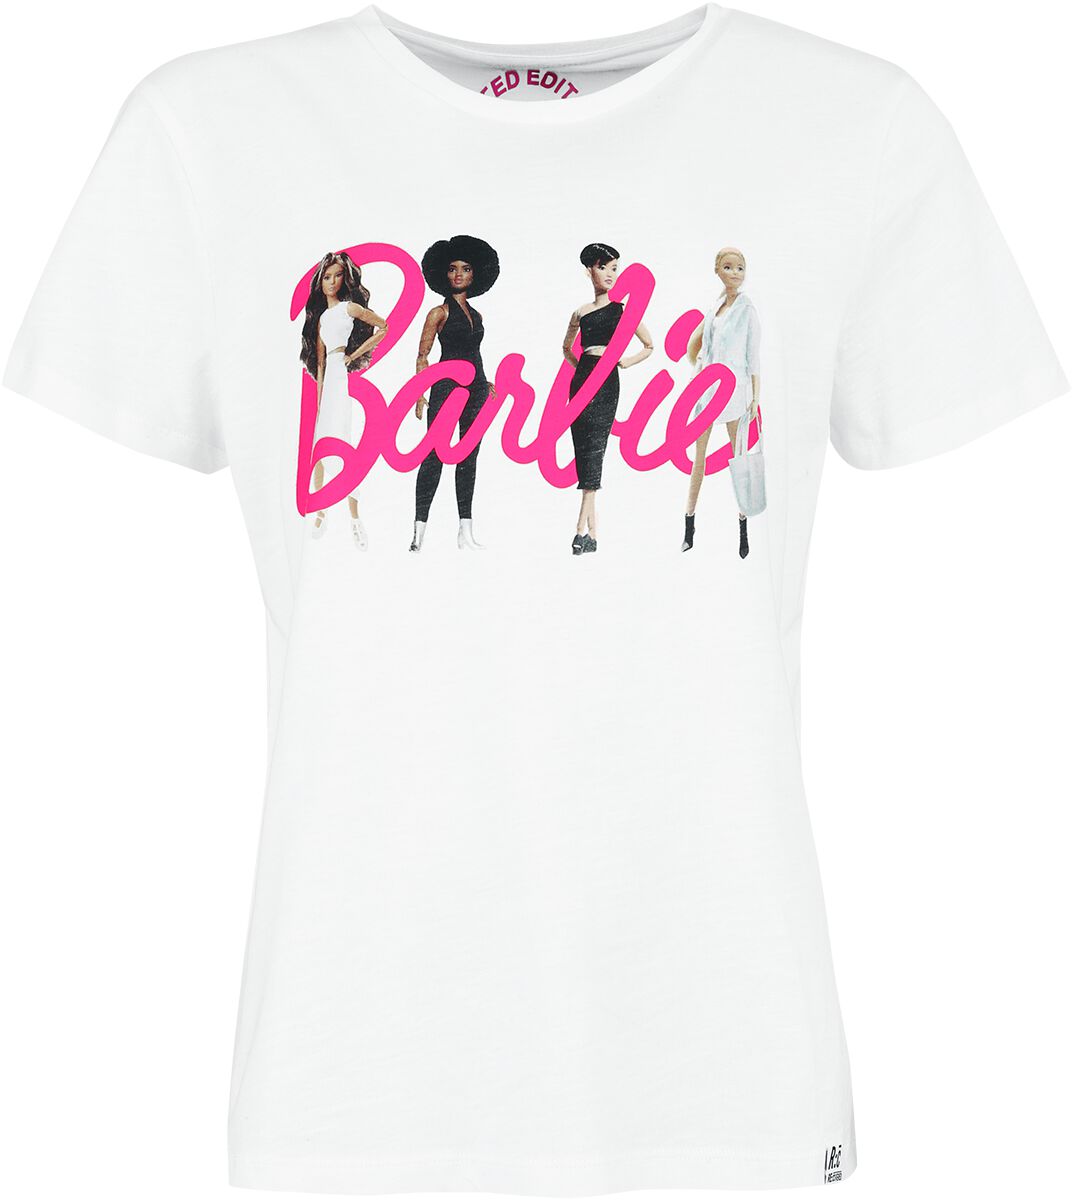 Barbie T-Shirt - Recovered - Here Come The Girls - M bis L - für Damen - Größe L - weiß  - Lizenzierter Fanartikel